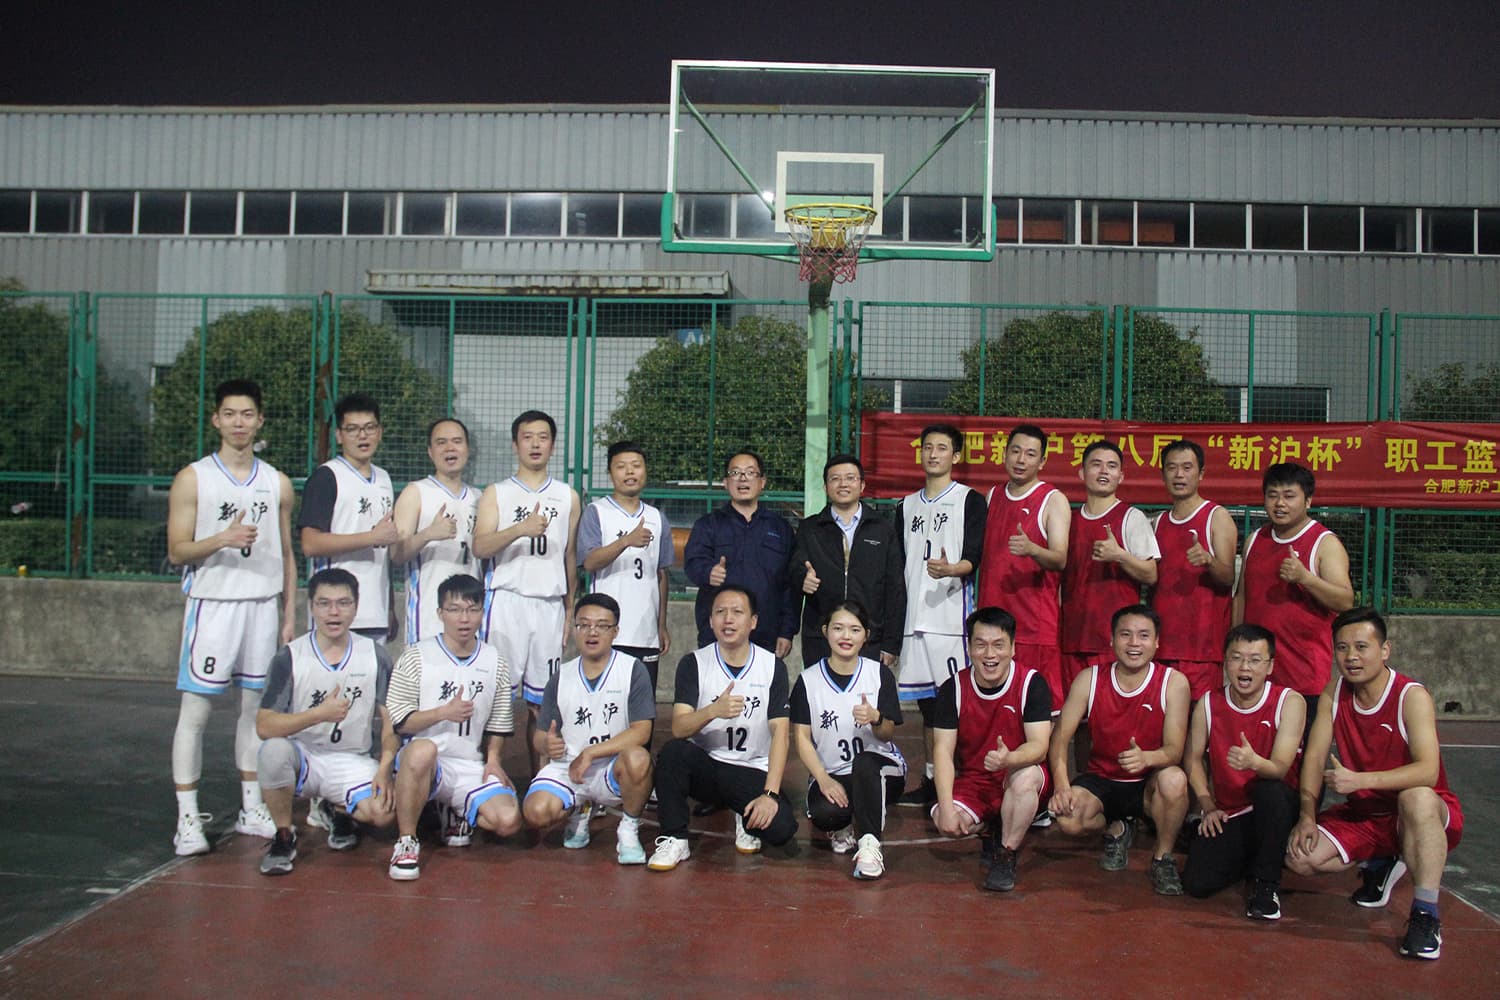 لعبة كرة السلة الساخنة في شينهو
    